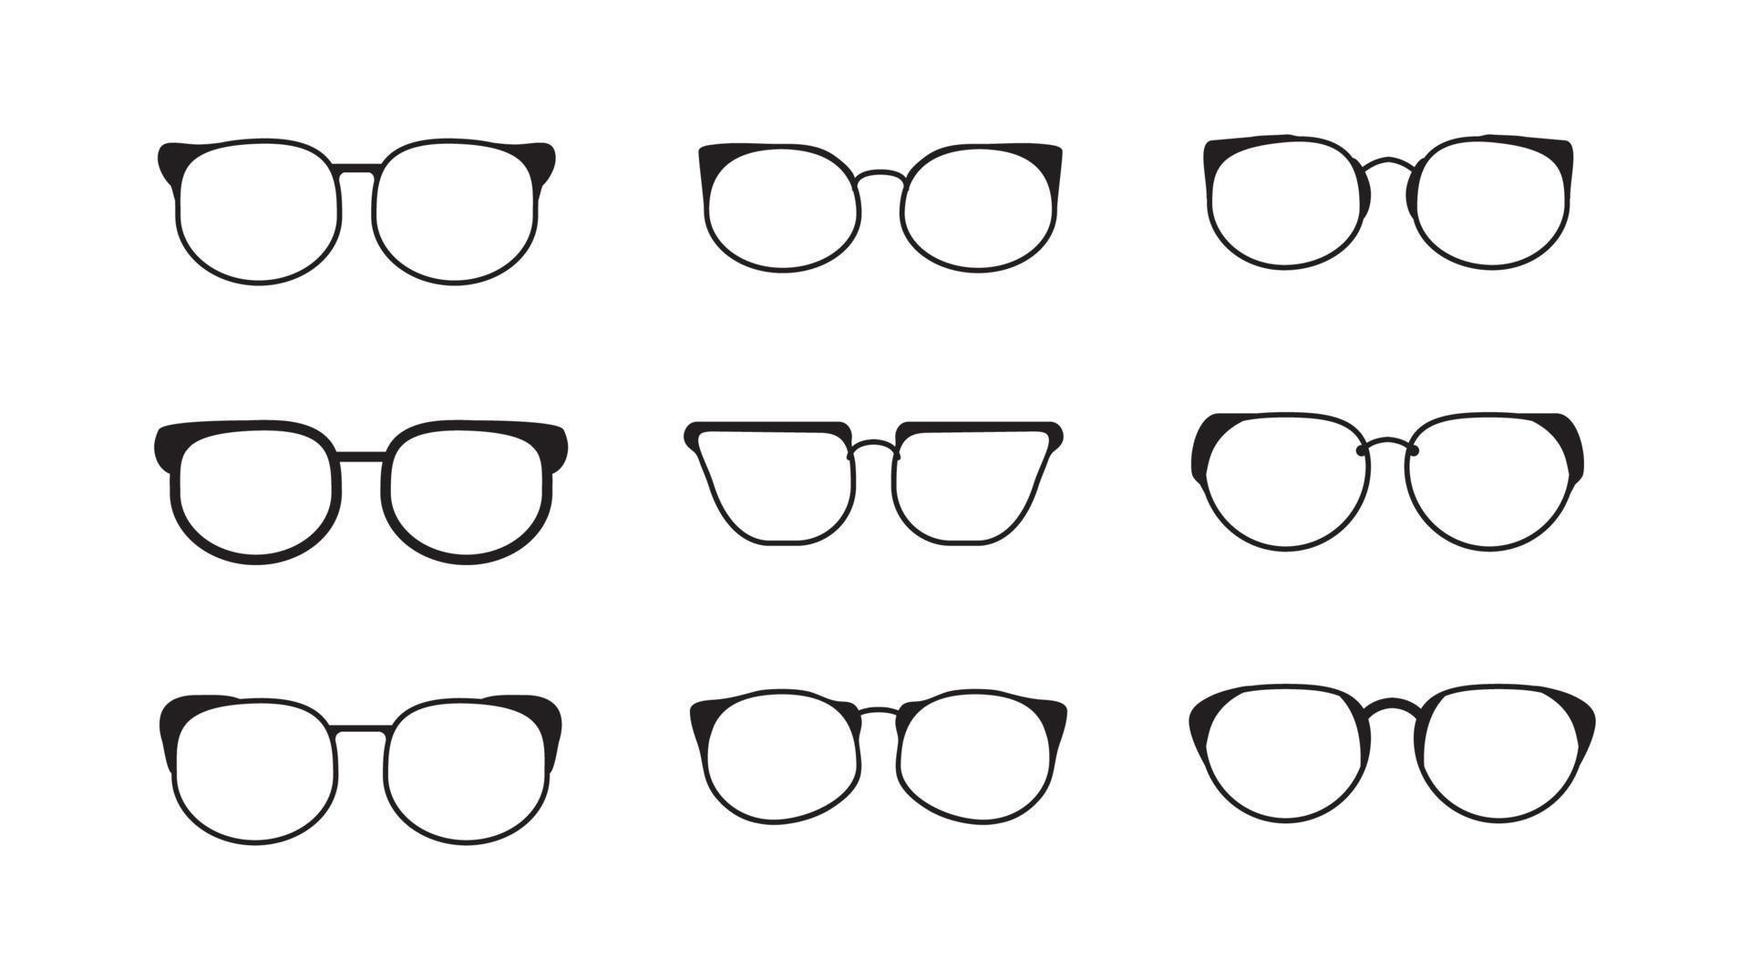 svart och vit vektor illustration av öga glasögon